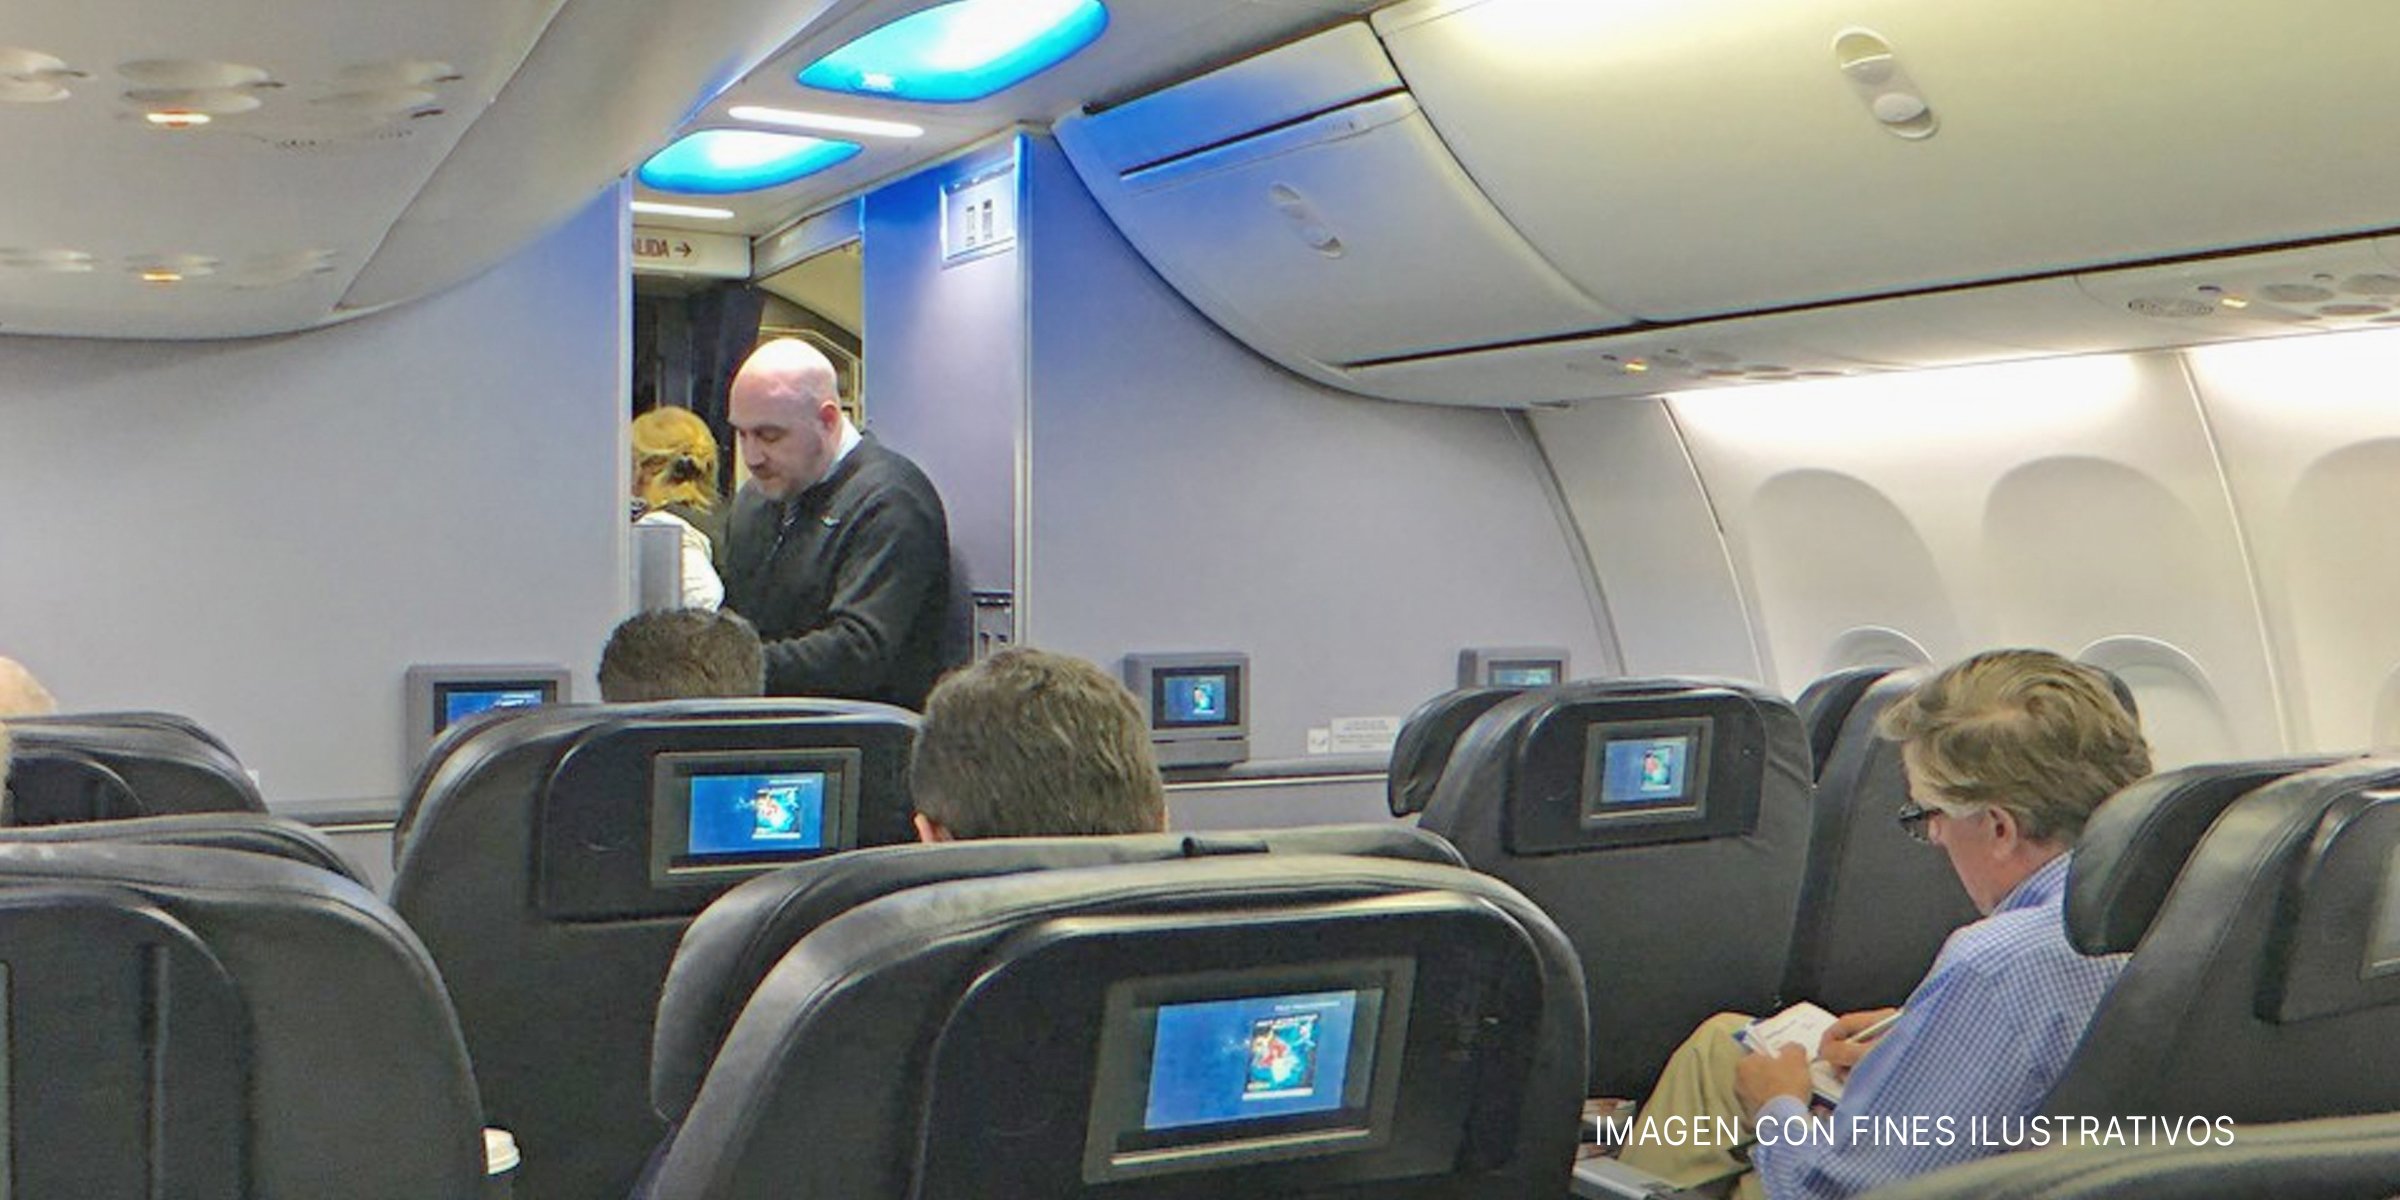 Personas a bordo de un avión | Foto: flickr.com/alan-light (CC BY 2.0)